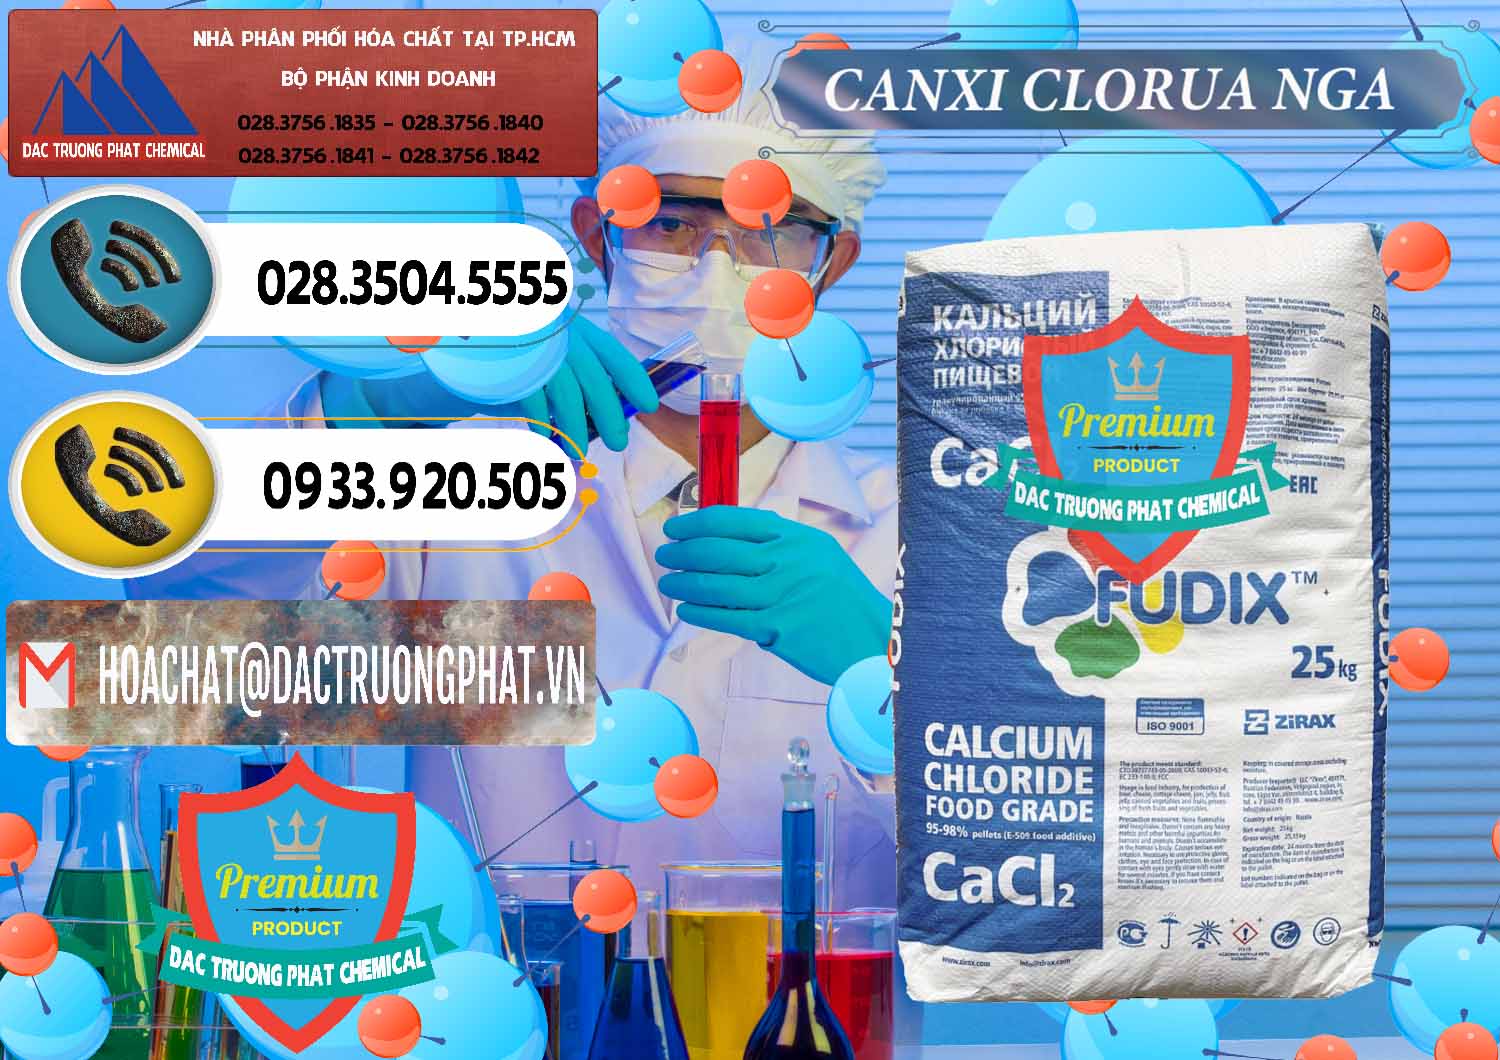 Cty chuyên bán - cung ứng CaCl2 – Canxi Clorua Nga Russia - 0430 - Nơi chuyên kinh doanh & cung cấp hóa chất tại TP.HCM - hoachatdetnhuom.vn